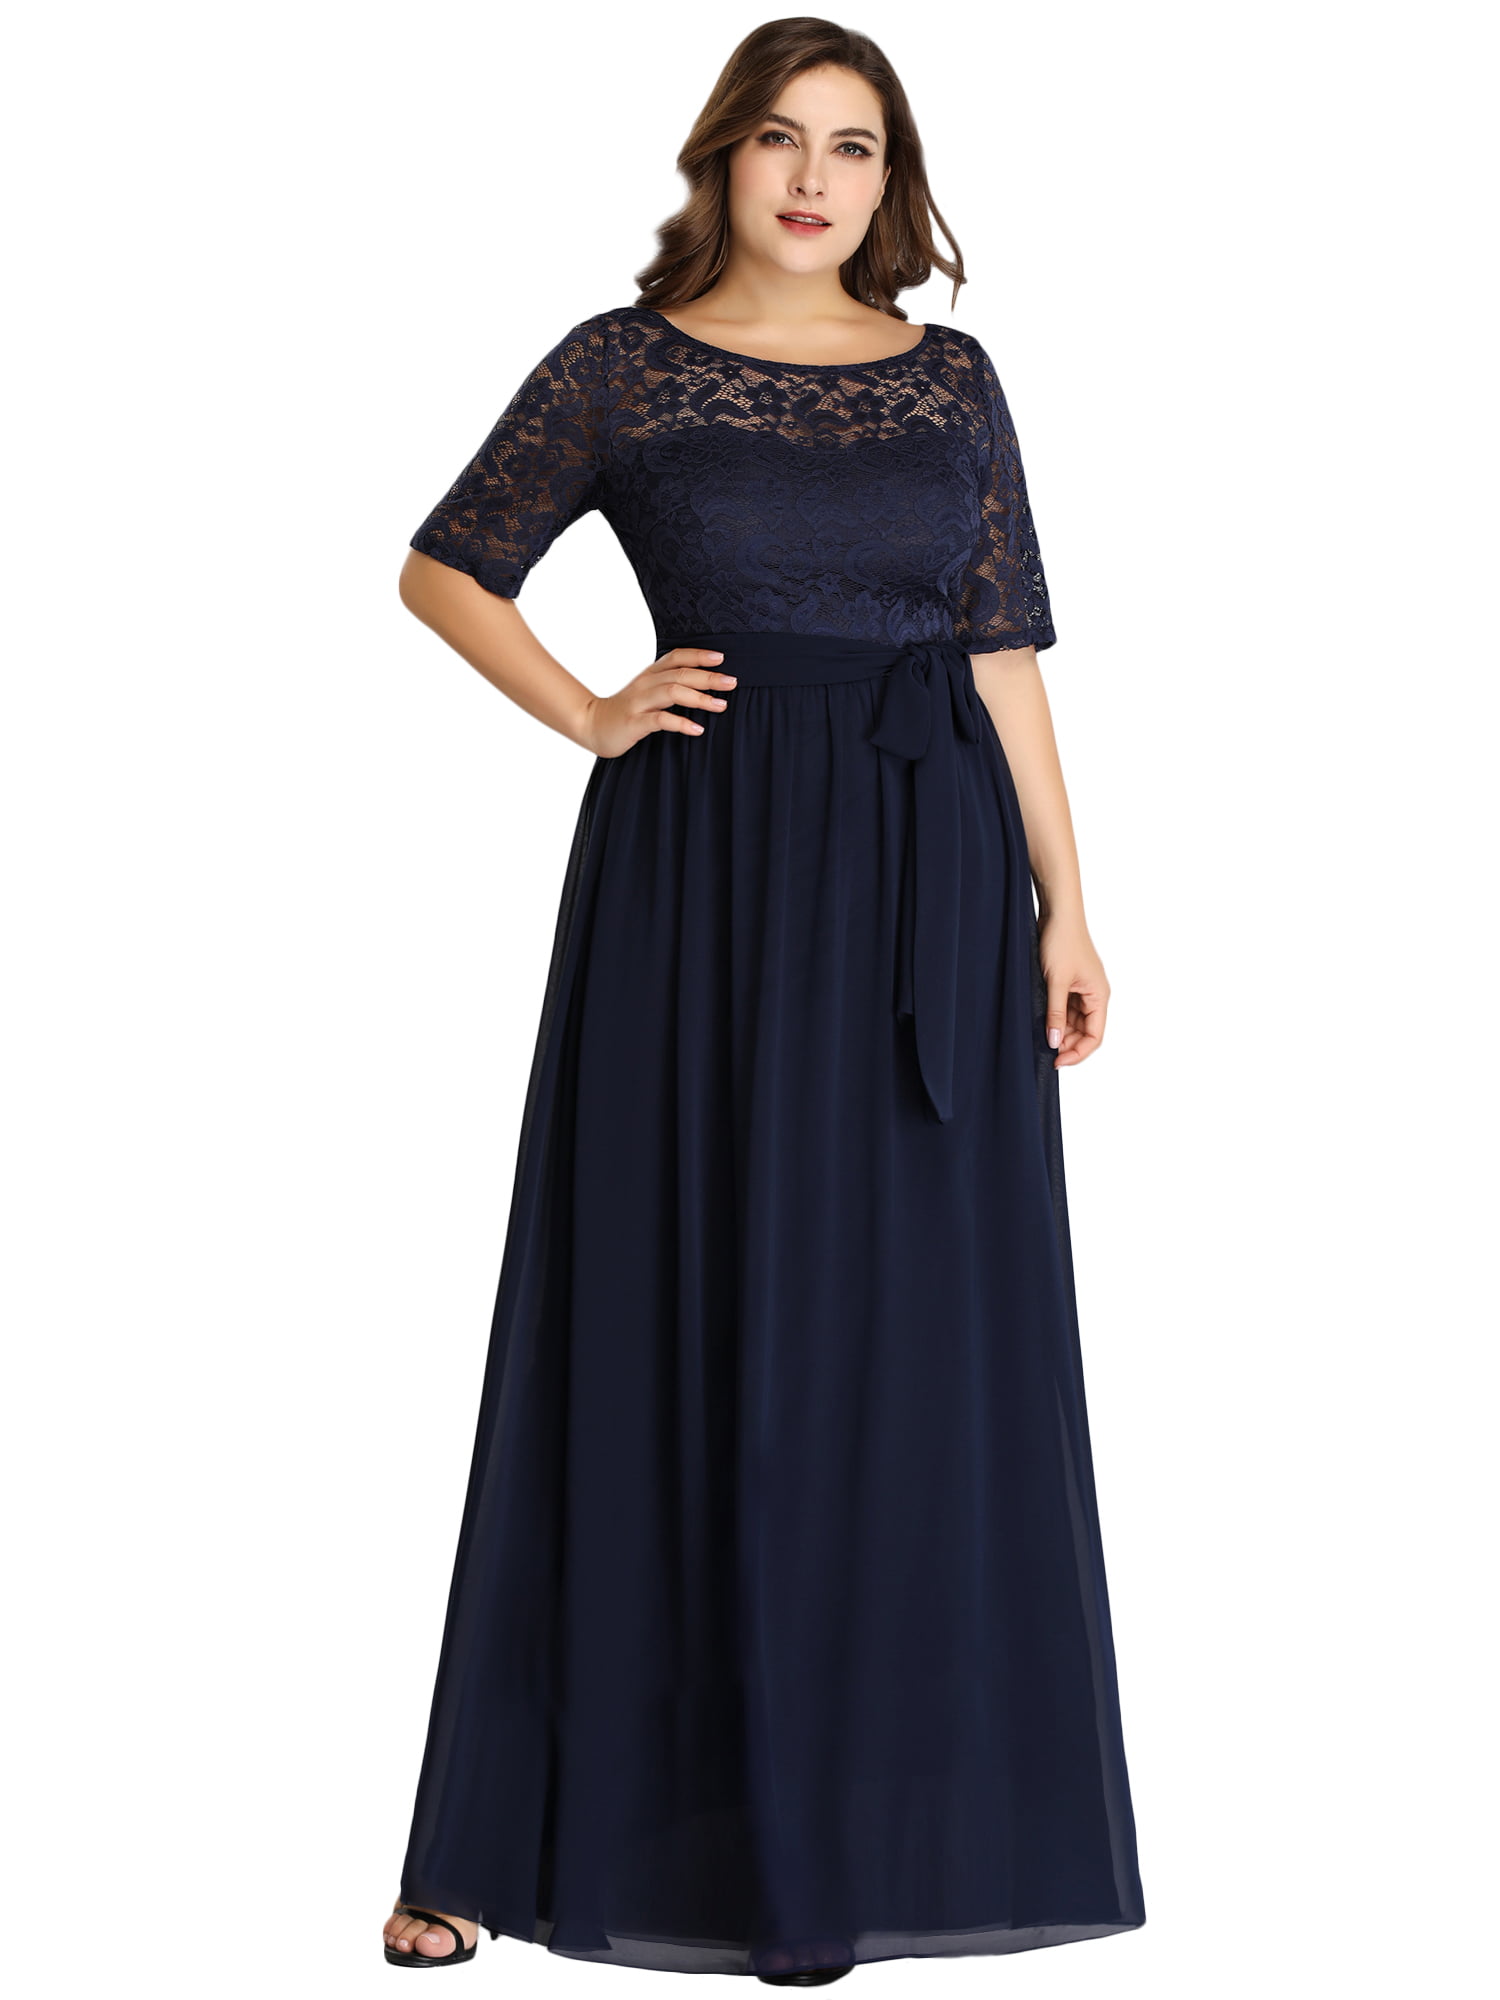 Bride Dresses for Women 07624 Navy Blue ...